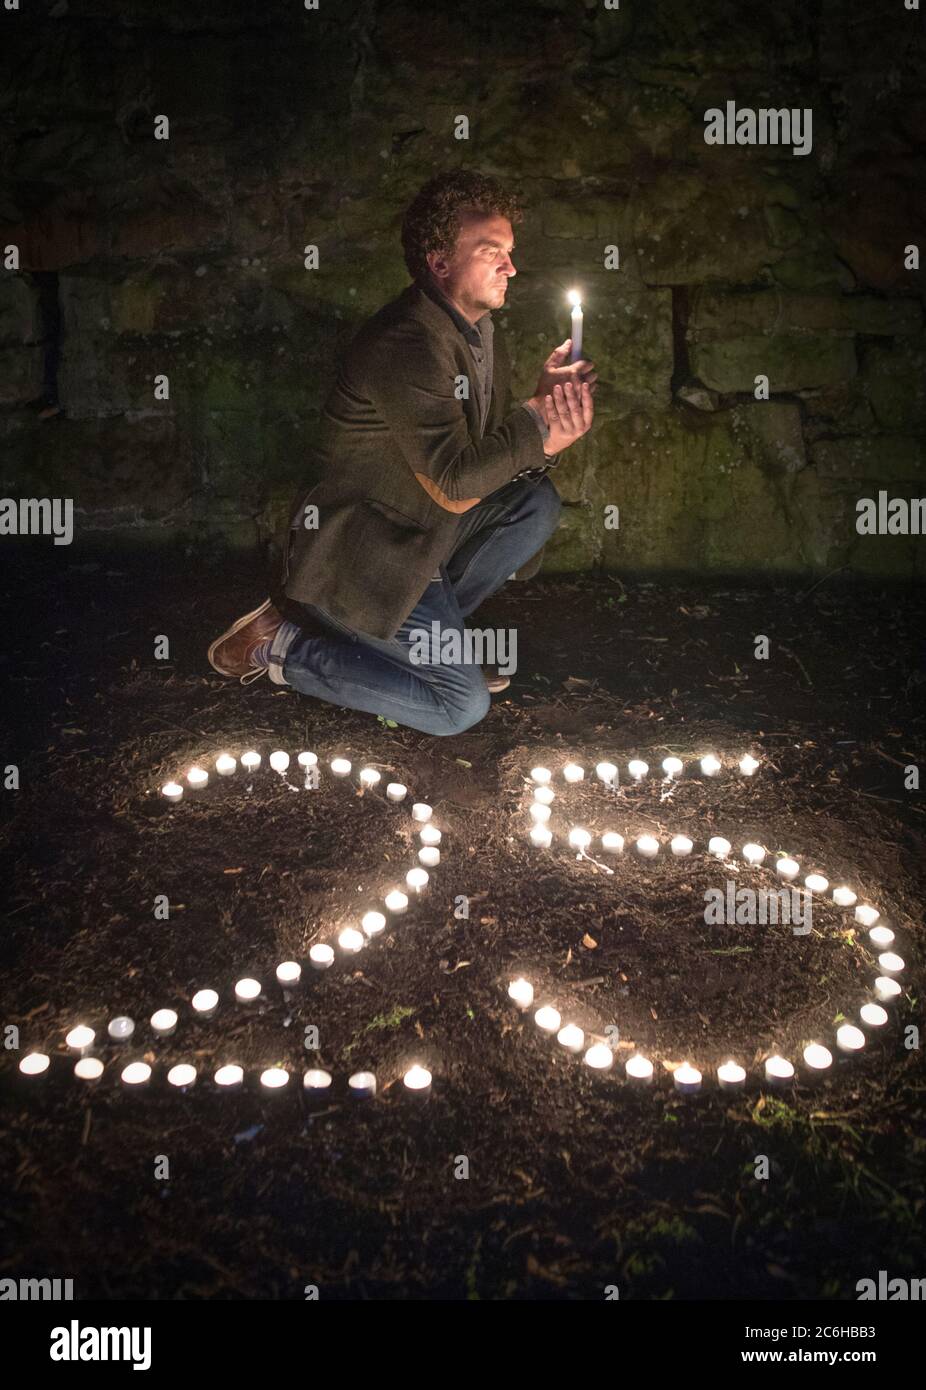 Der preisgekrönte Regisseur Samir Mehanovic, der 1995 als Einwanderer aus dem Bosnienkrieg nach Großbritannien kam und heute in Edinburgh lebt, zündet Kerzen an, um dem 25. Jahrestag des Genozids in Srebrenica zu gedenken. Stockfoto